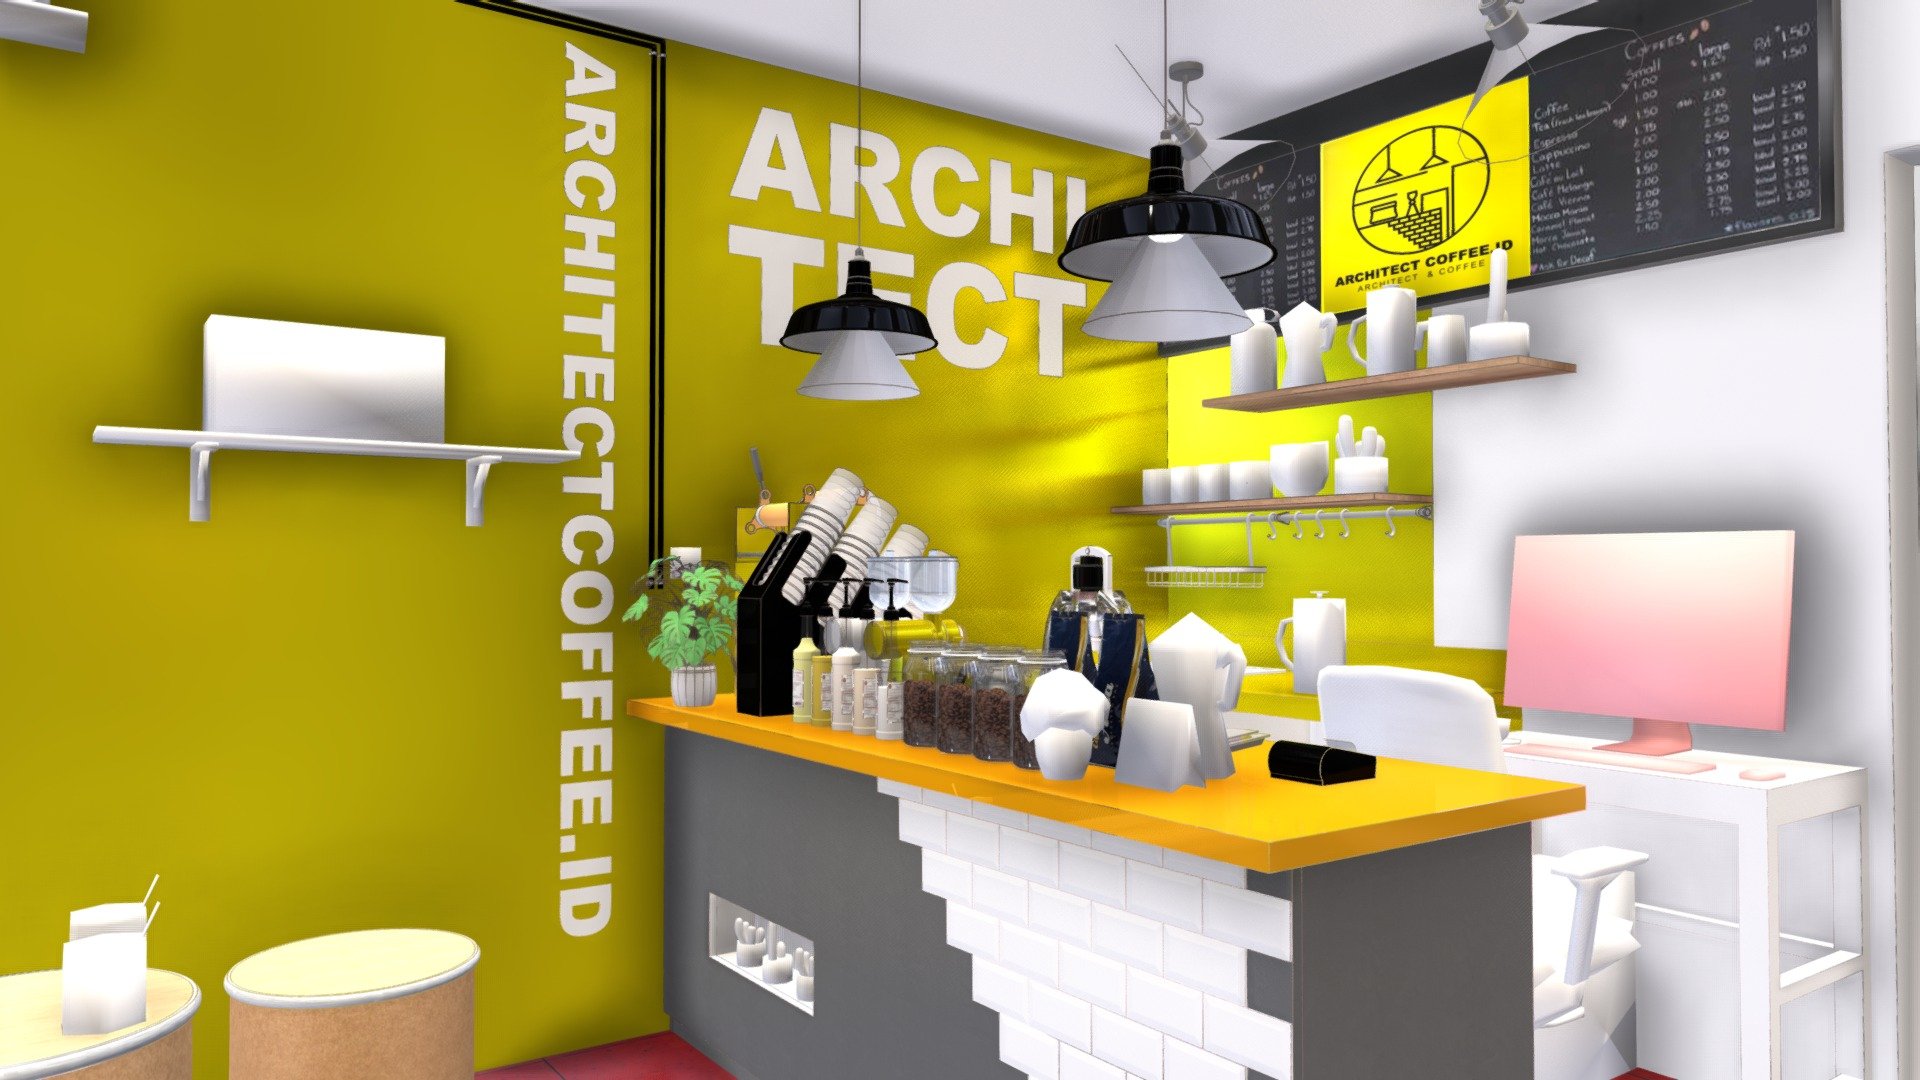 architect-coffee-shop-3d-model-by-yesanastudio-dbac5d4-sketchfab